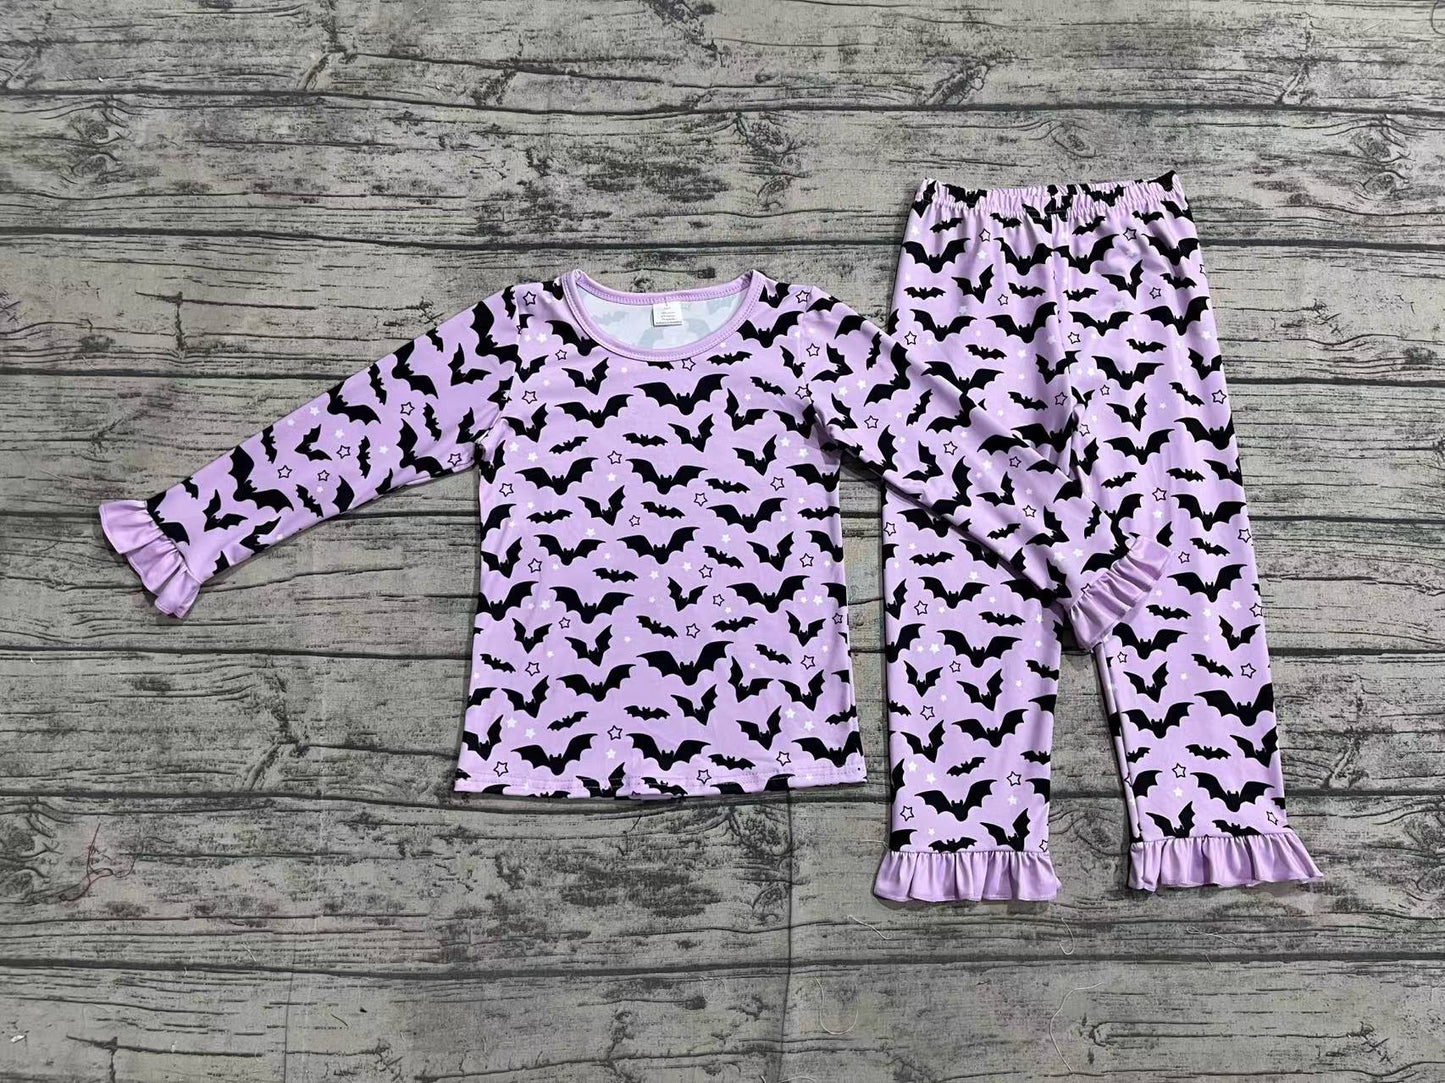 Lavender bat kids girls Halloween pajamas